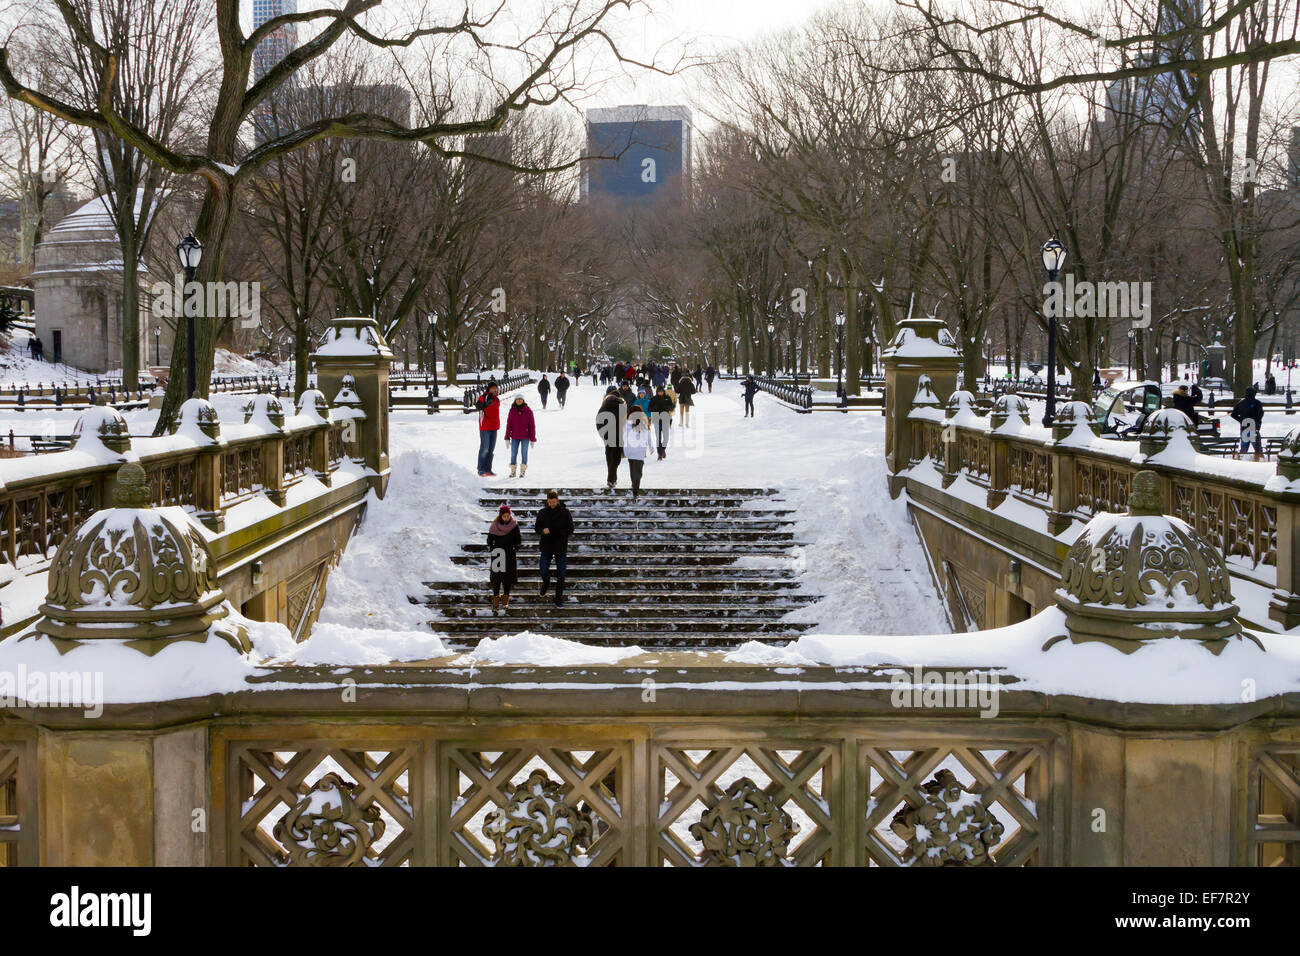 NEW YORK CITY - Janvier 2015 : des foules de gens profiter de la récente chute de neige dans Central Park après une grosse tempête d'hiver Banque D'Images